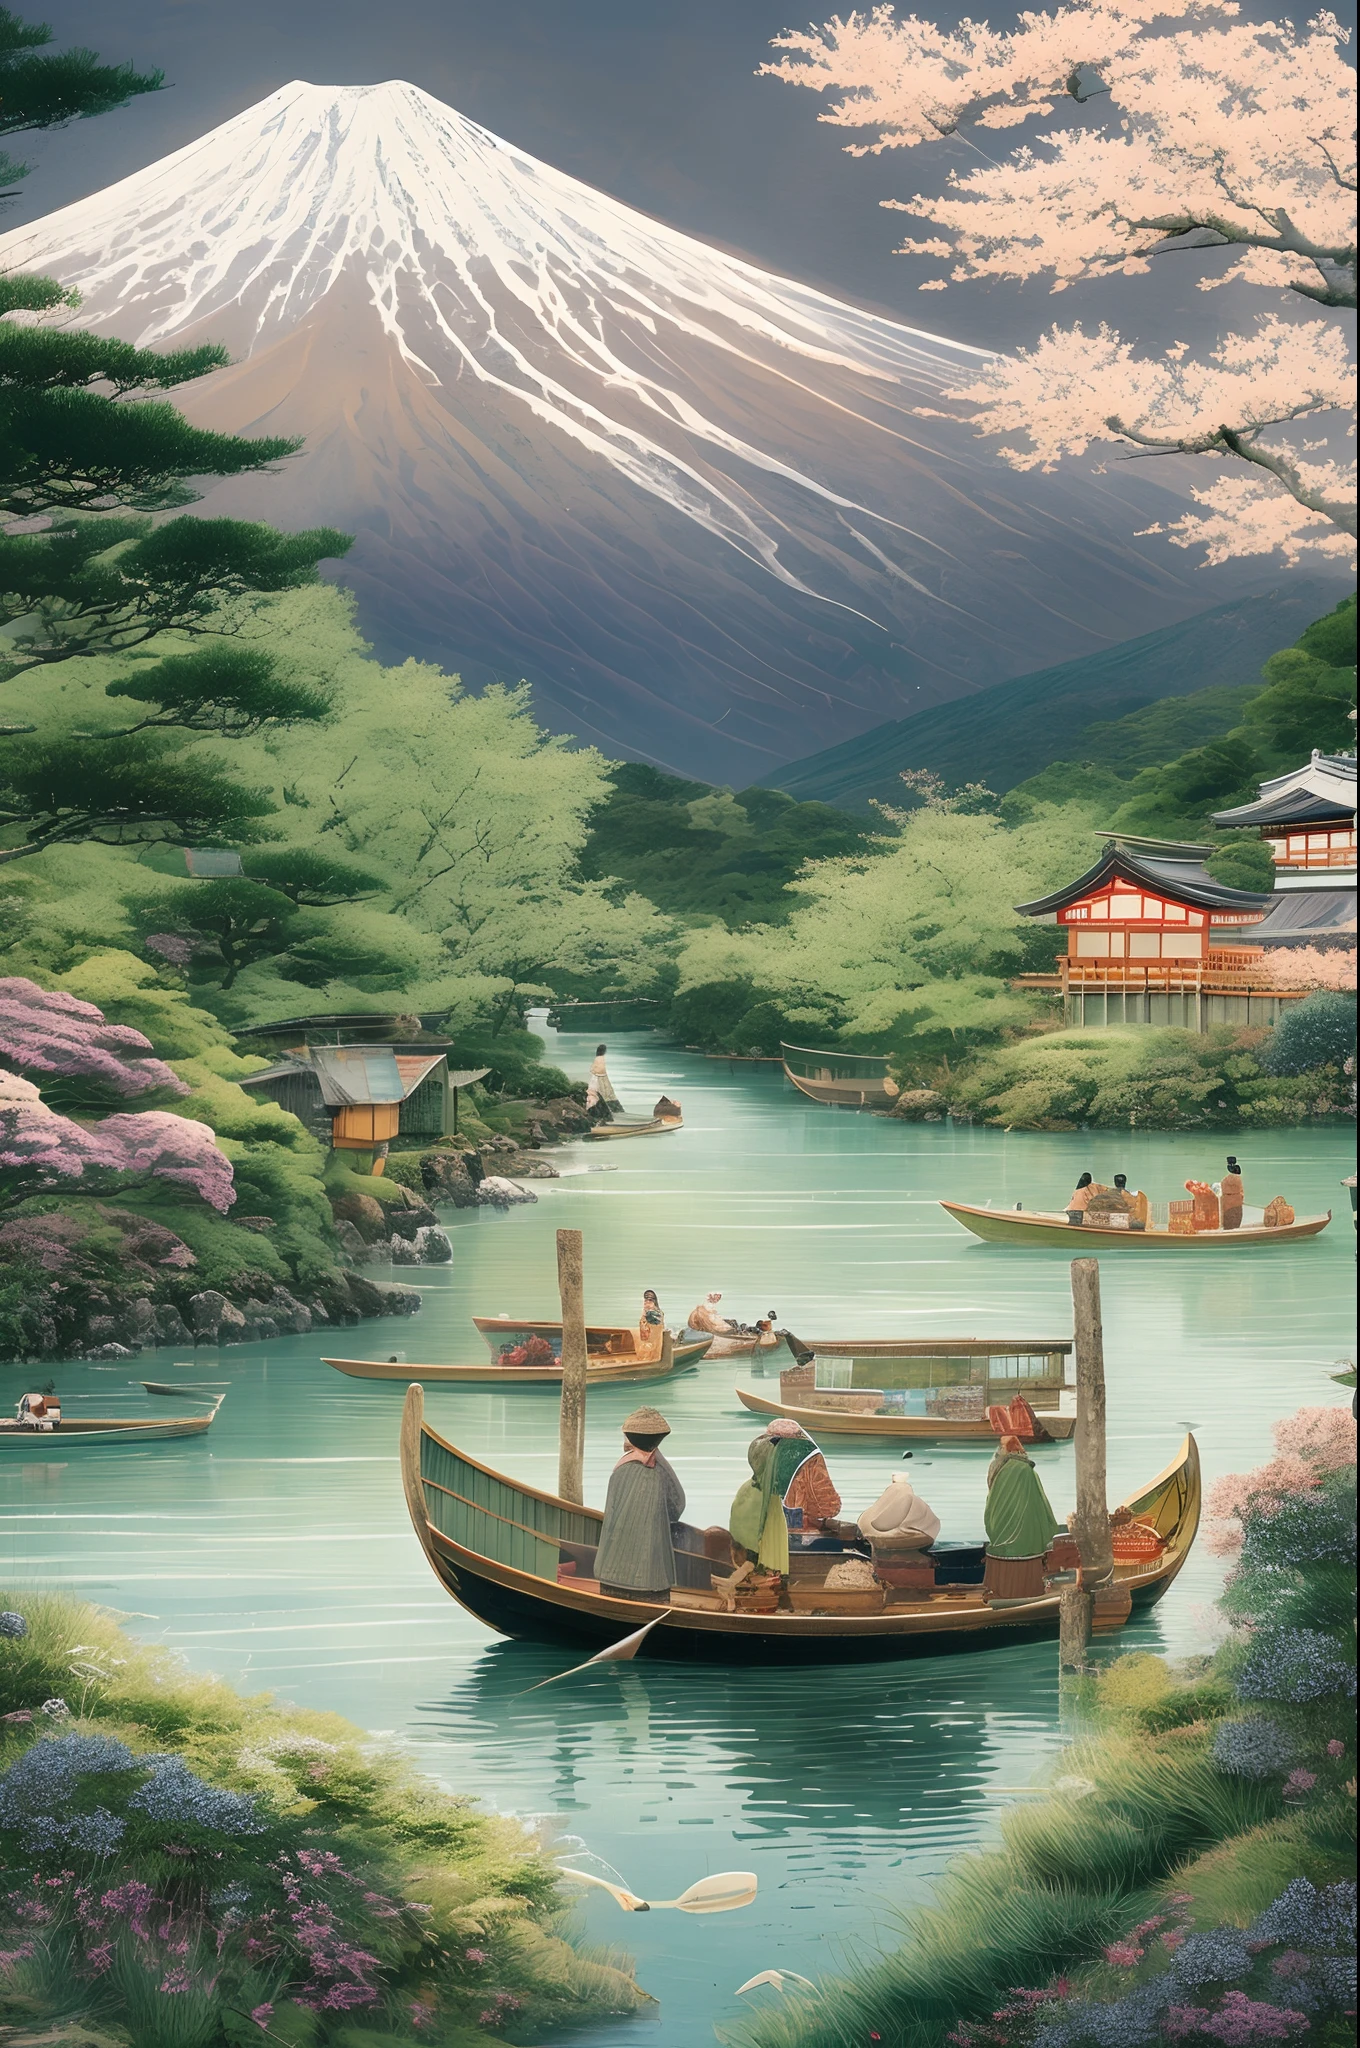 Monte Fuji, um símbolo da beleza natural do Japão, cercado por uma vegetação exuberante e um rio cristalino, pescadores locais em barcos tradicionais exercendo seu comércio, um cenário de harmonia e tradição, ilustração, arte digital com atenção aos detalhes culturais